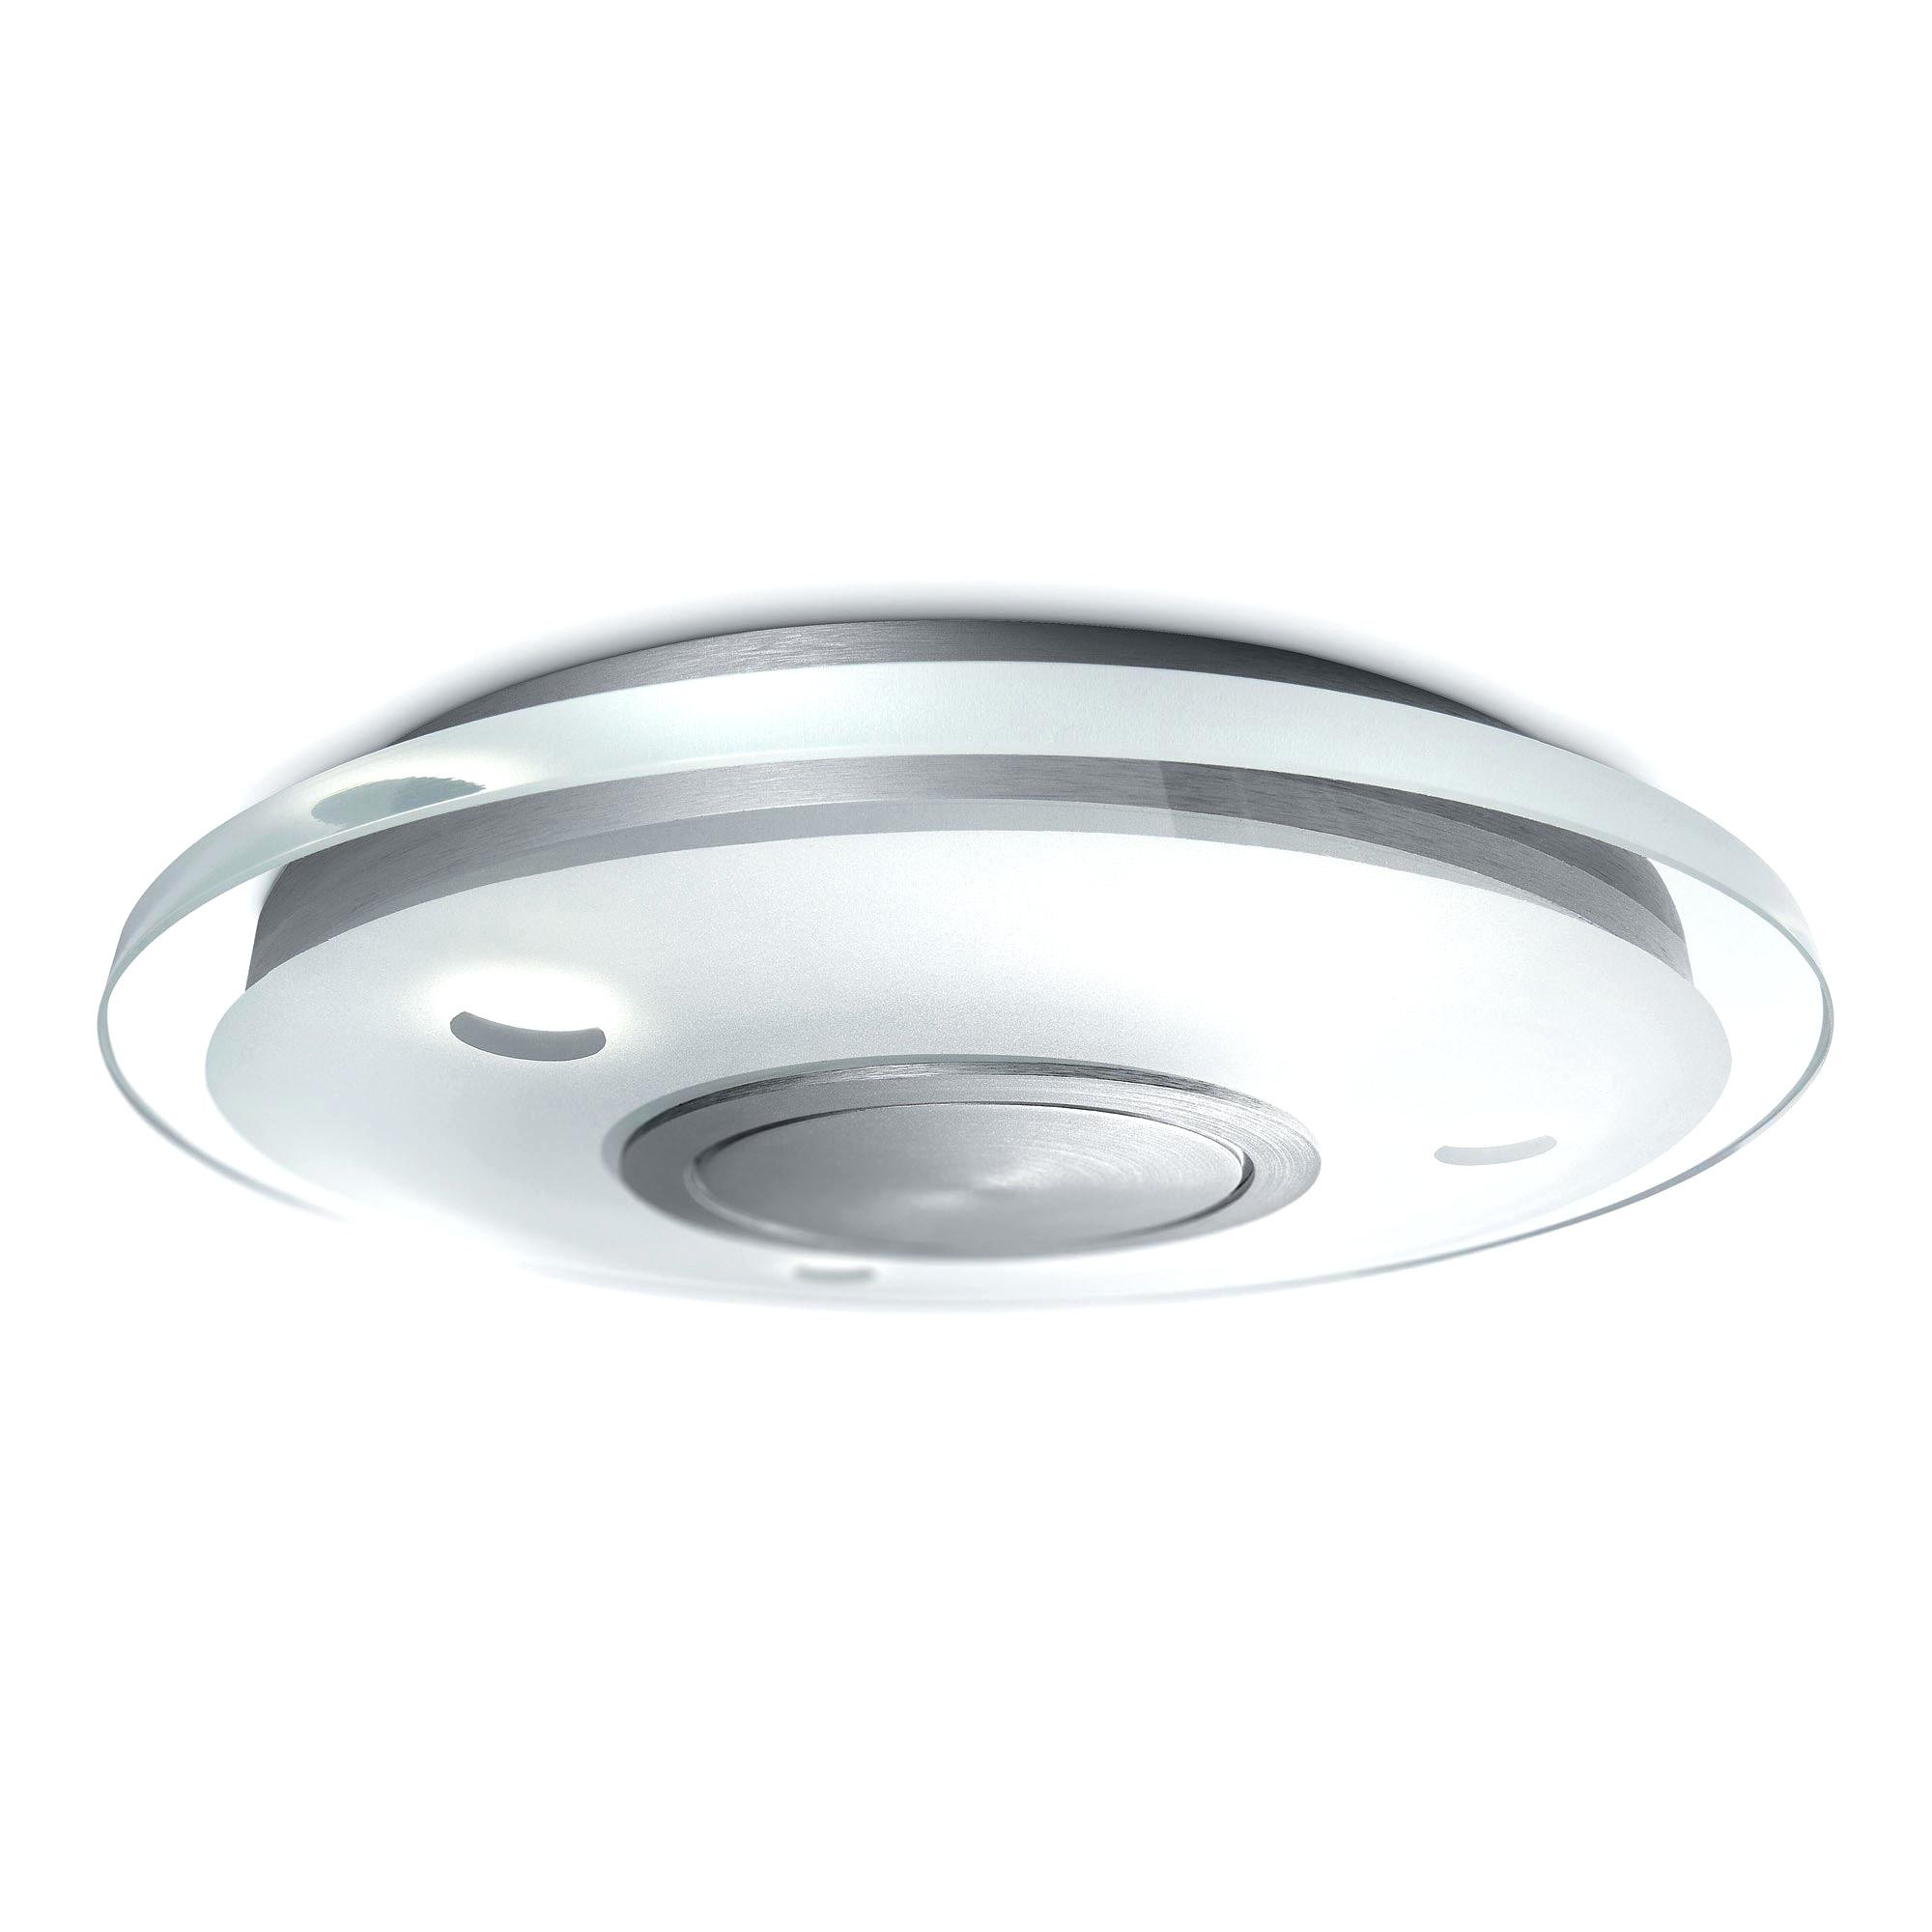 Utilitech Bathroom Fan With Light
 Bathroom Utilitech Bathroom Fan For Best Air Control Idea